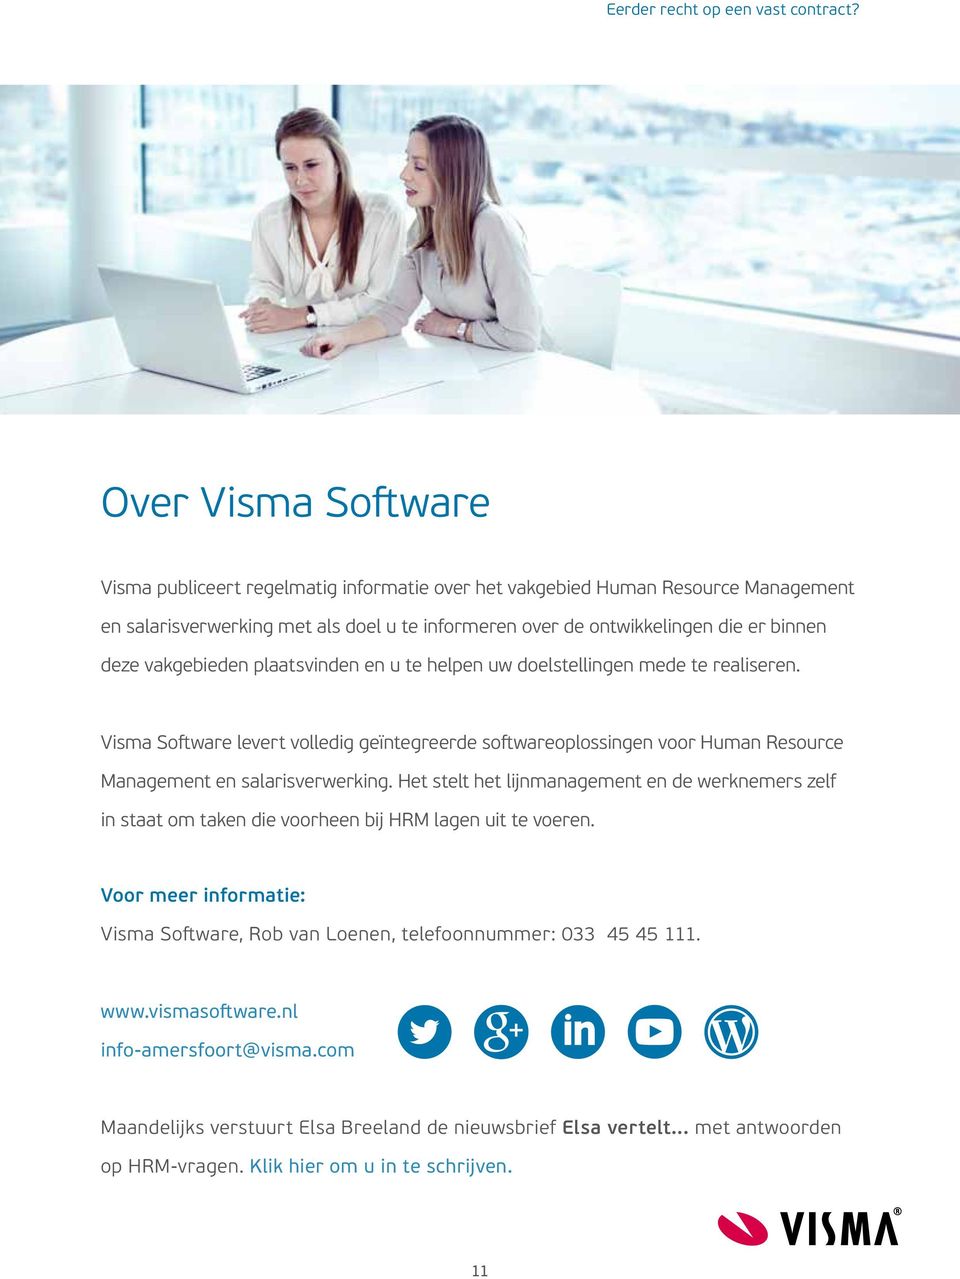 Visma Software levert volledig geïntegreerde softwareoplossingen voor Human Resource Management en salarisverwerking.